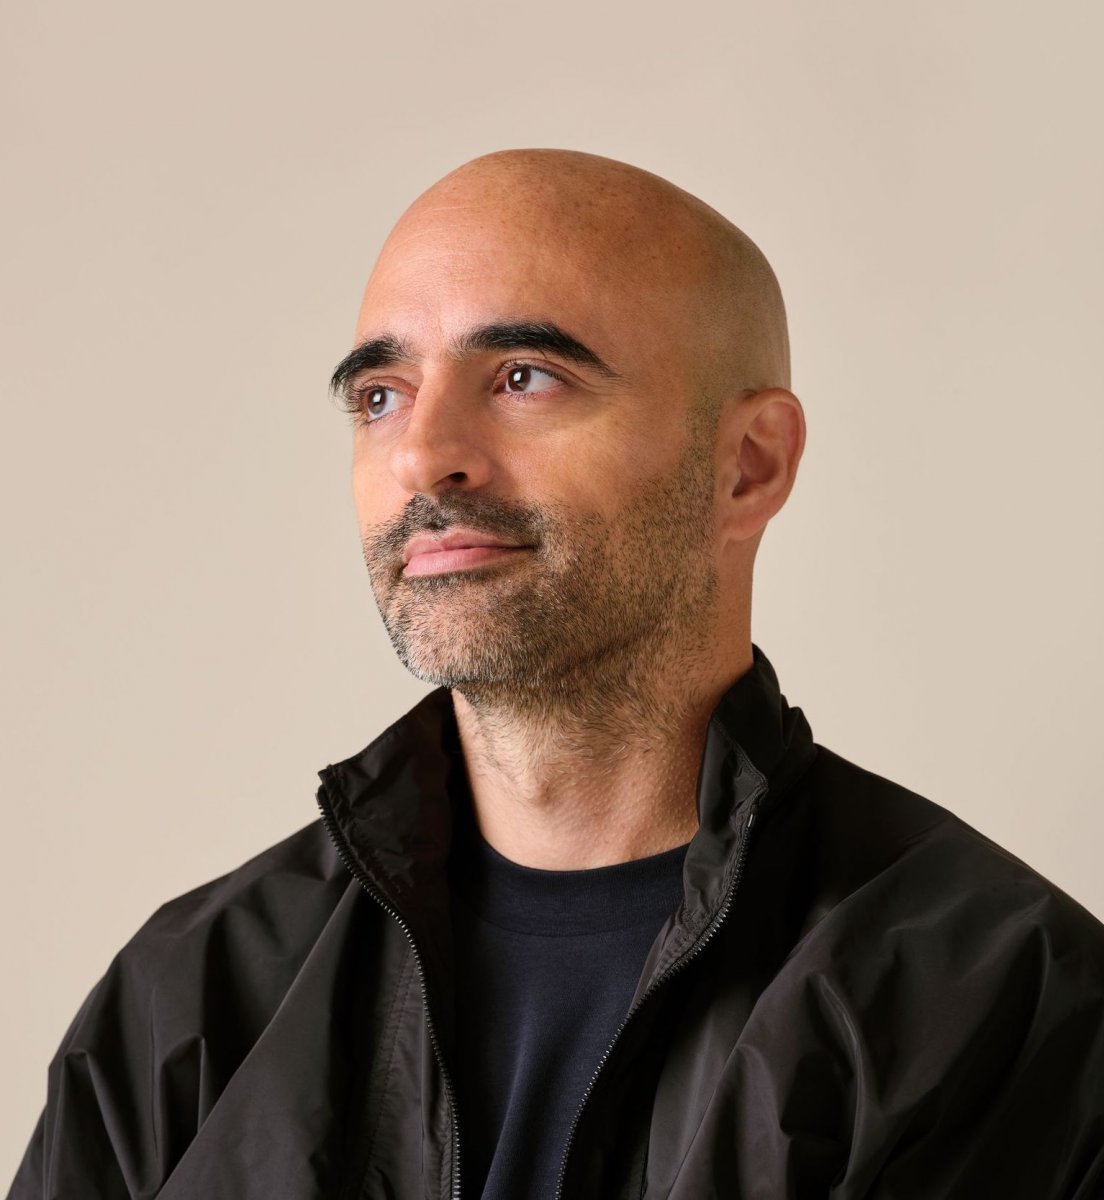 SSENSE CEO Rami Atallah looking pensive and off camera wearing black jacket and t-shirt